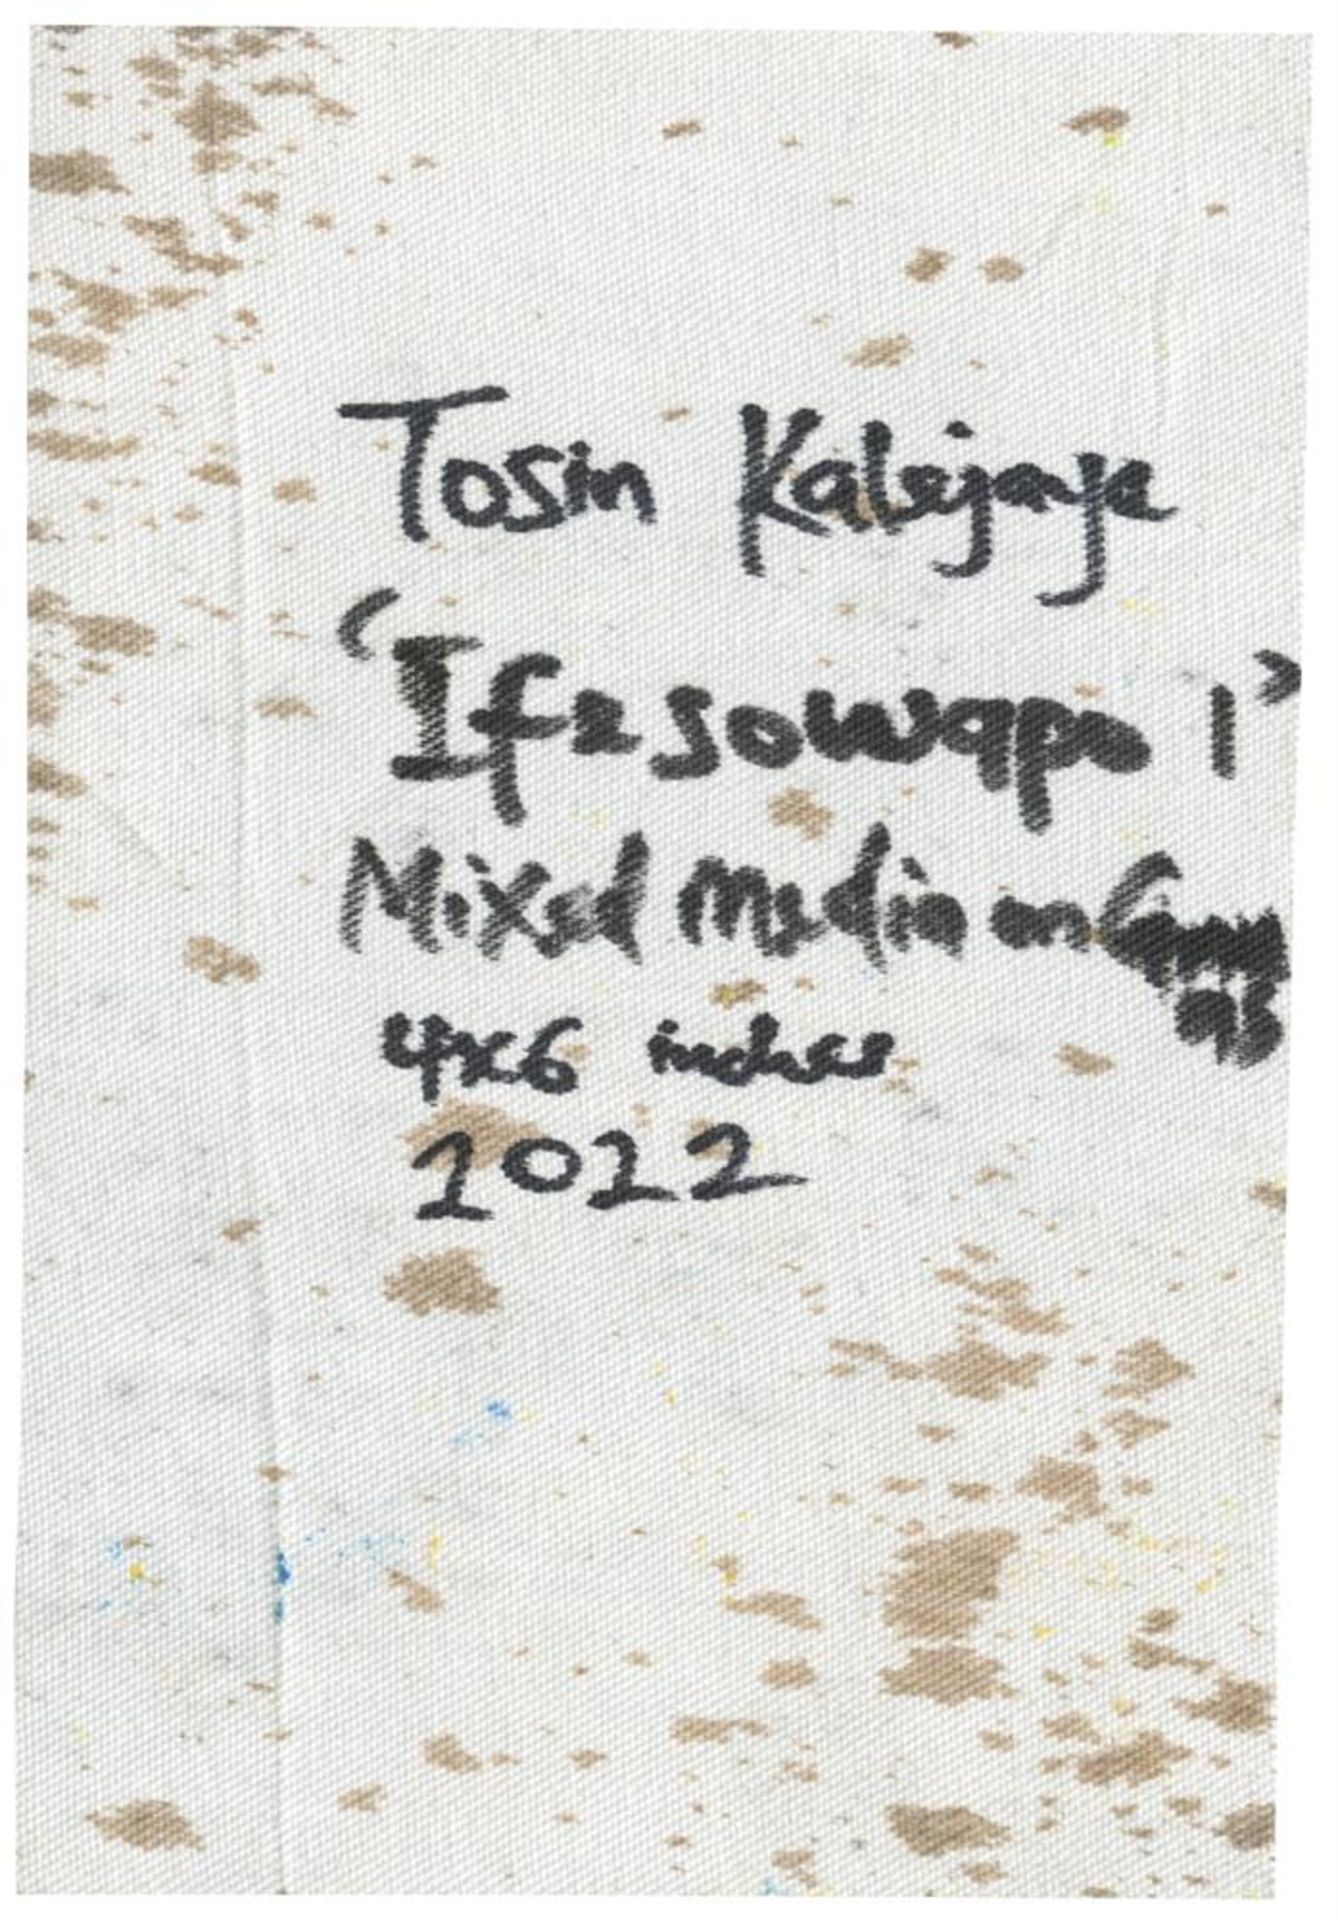 Tosin Kalejaye, Ifesowapo I, 2022 - Image 2 of 3